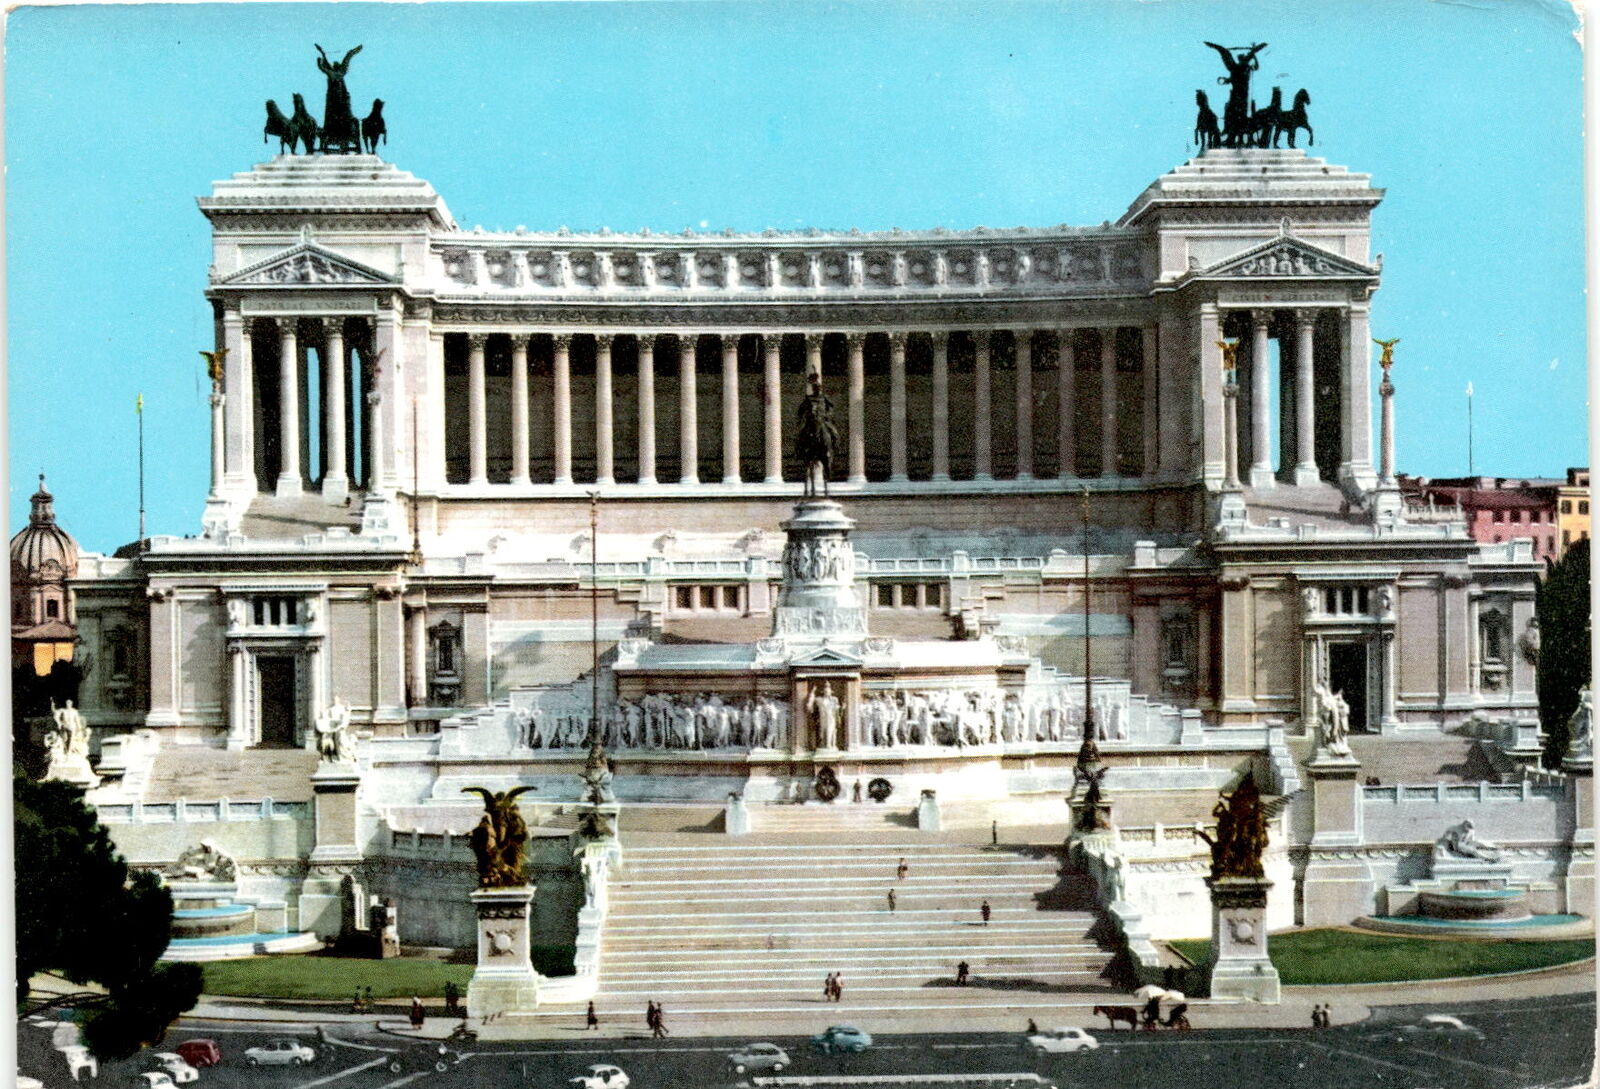 Altare della Patria Postcard: Italian Cultural Heritage